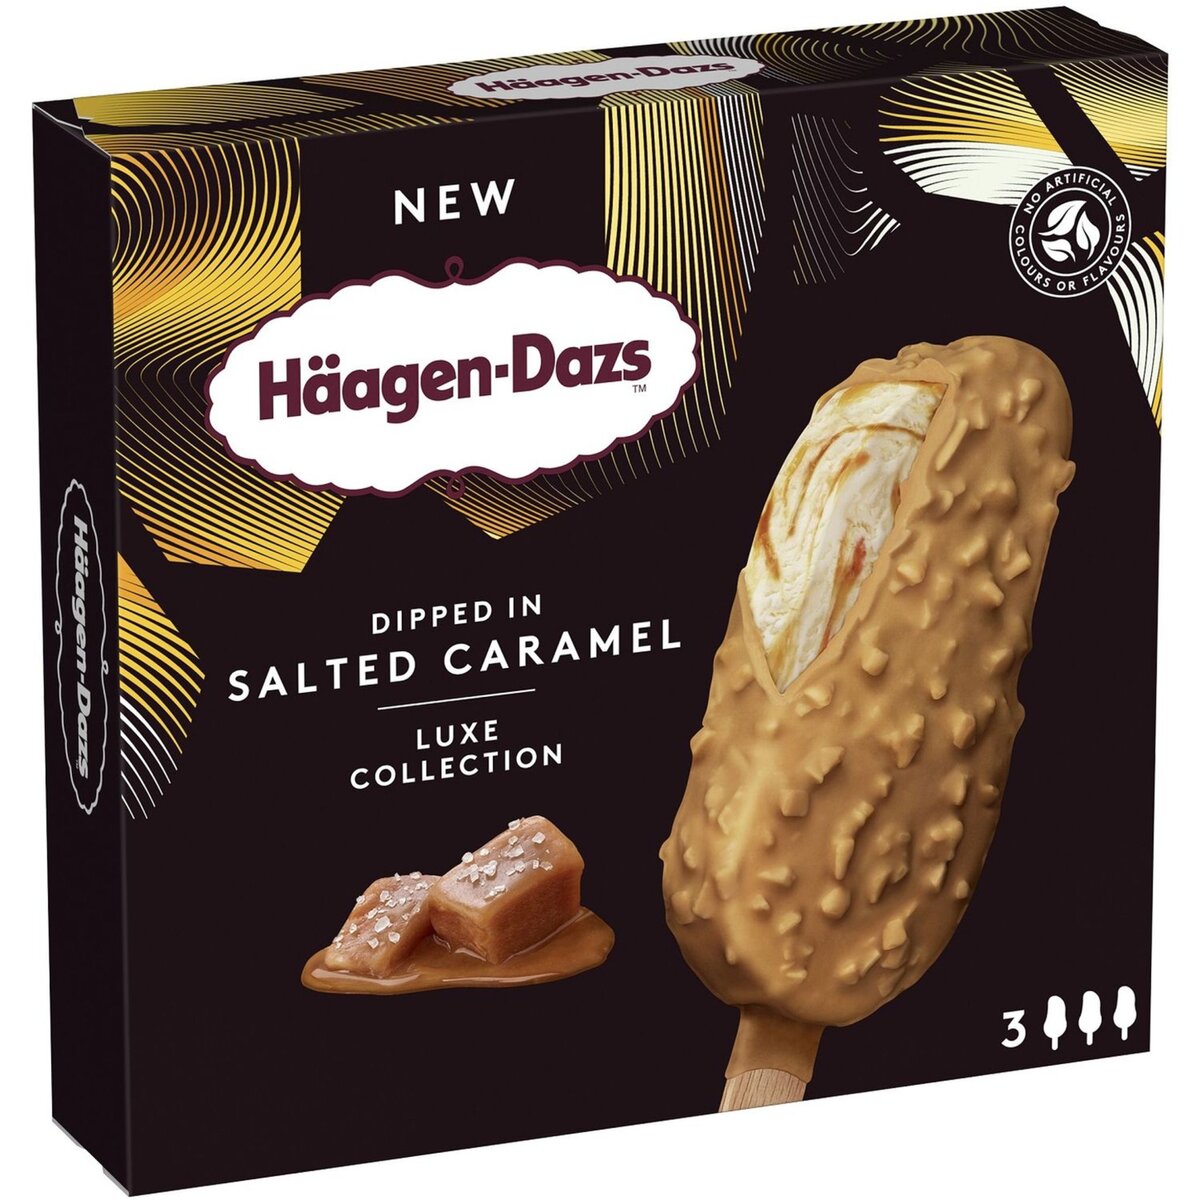 HAAGEN DAZS Häagen-Dazs Batônnet glacé salted caramel 210g 3 batônnets 210g